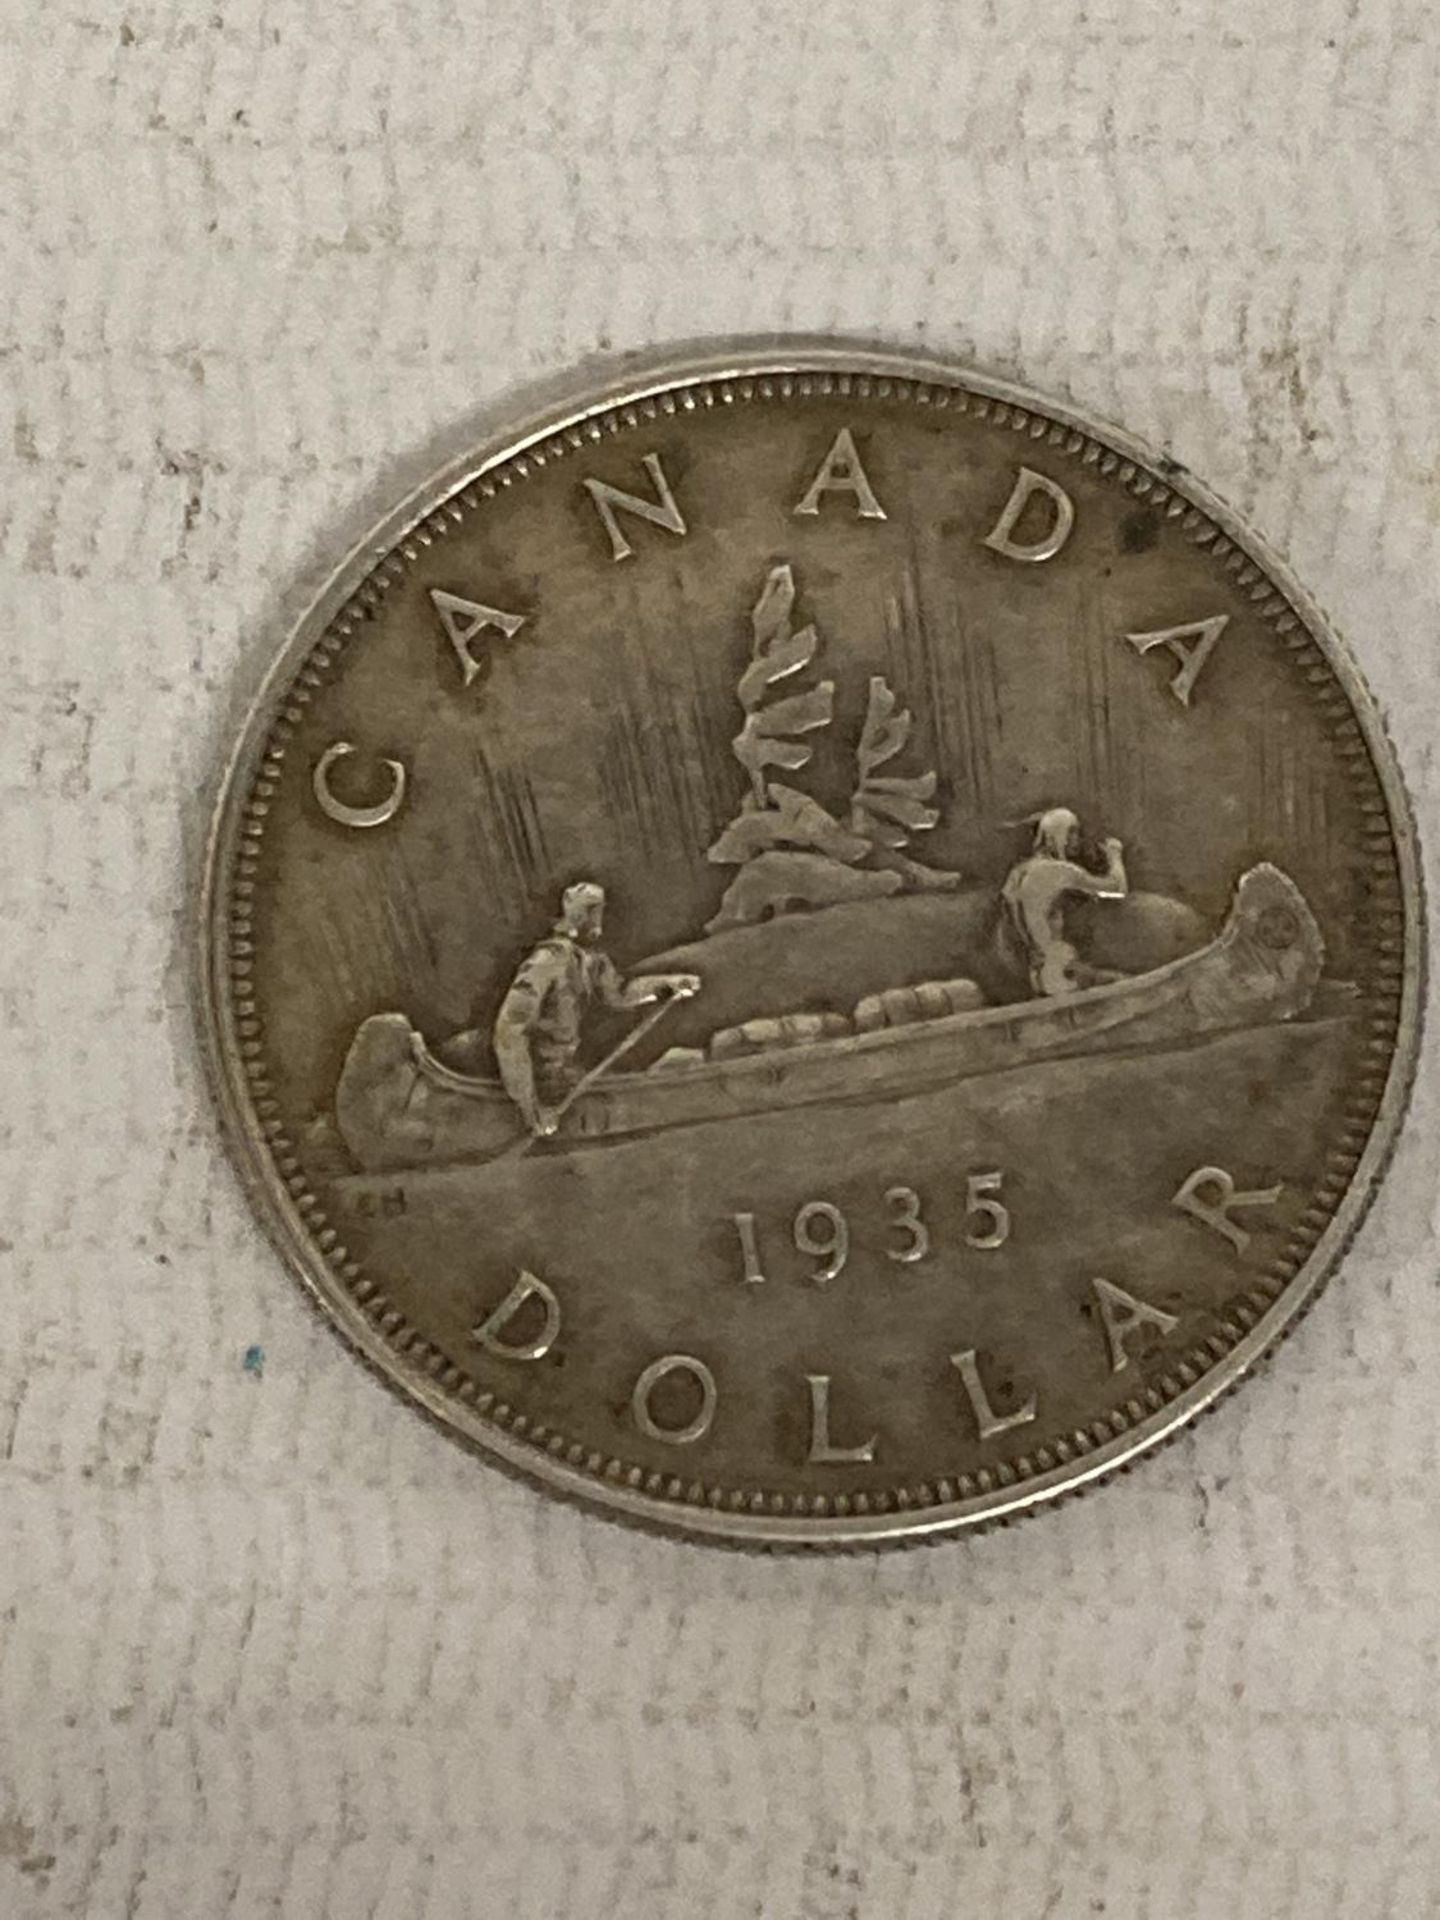 CANADA 1935 $1 SILVER COIN , FINE CONDITION - Image 2 of 2